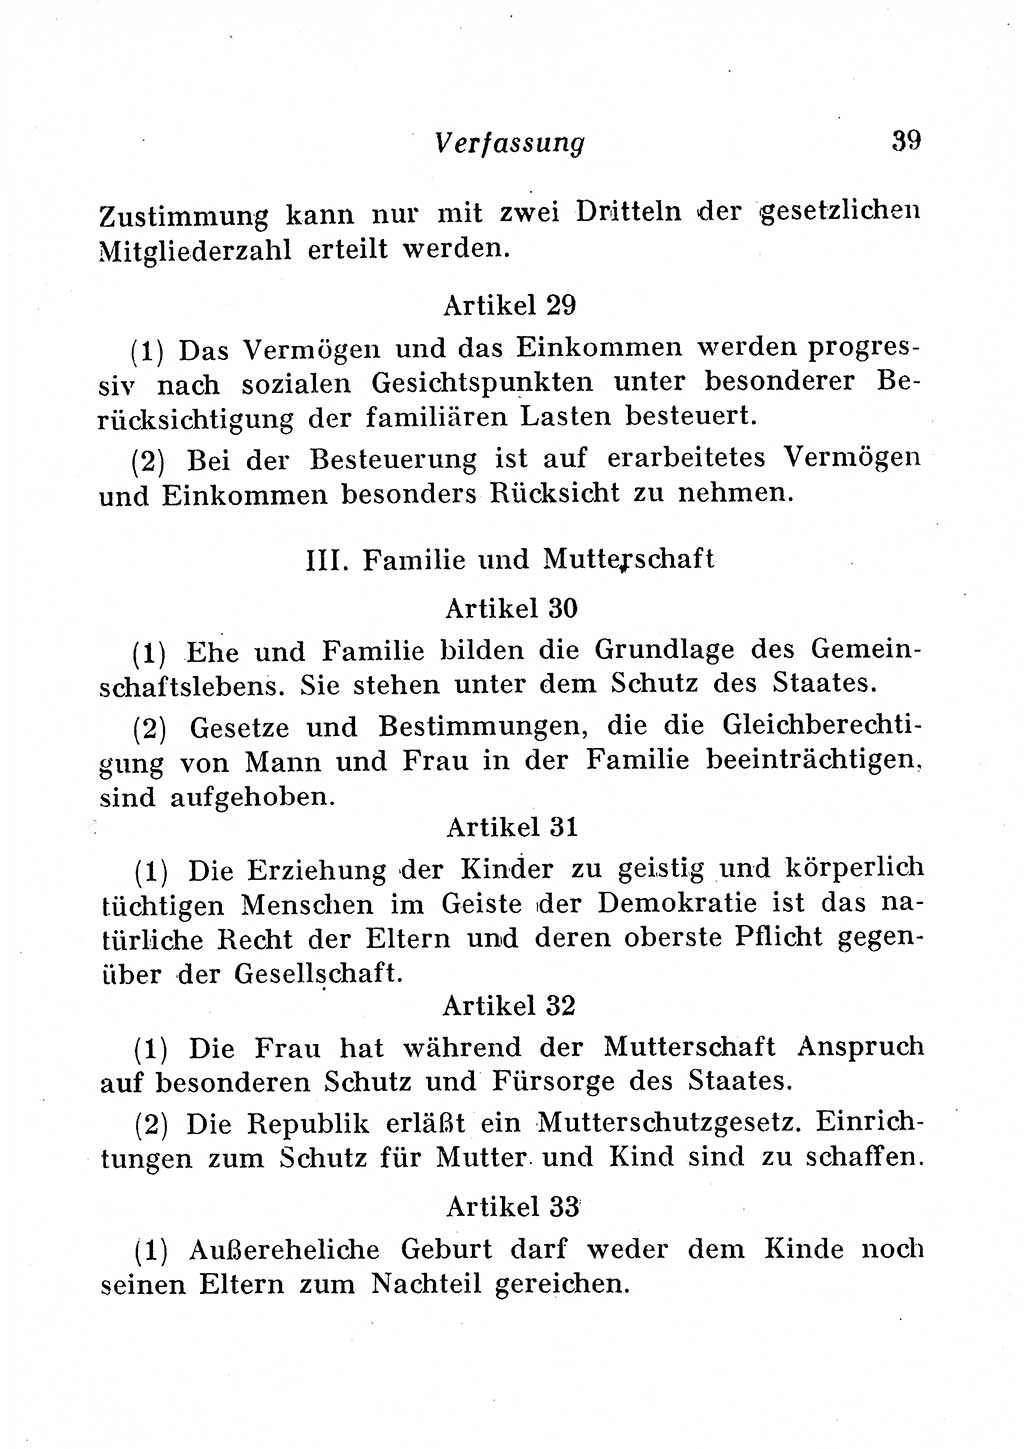 Staats- und verwaltungsrechtliche Gesetze der Deutschen Demokratischen Republik (DDR) 1958, Seite 39 (StVerwR Ges. DDR 1958, S. 39)